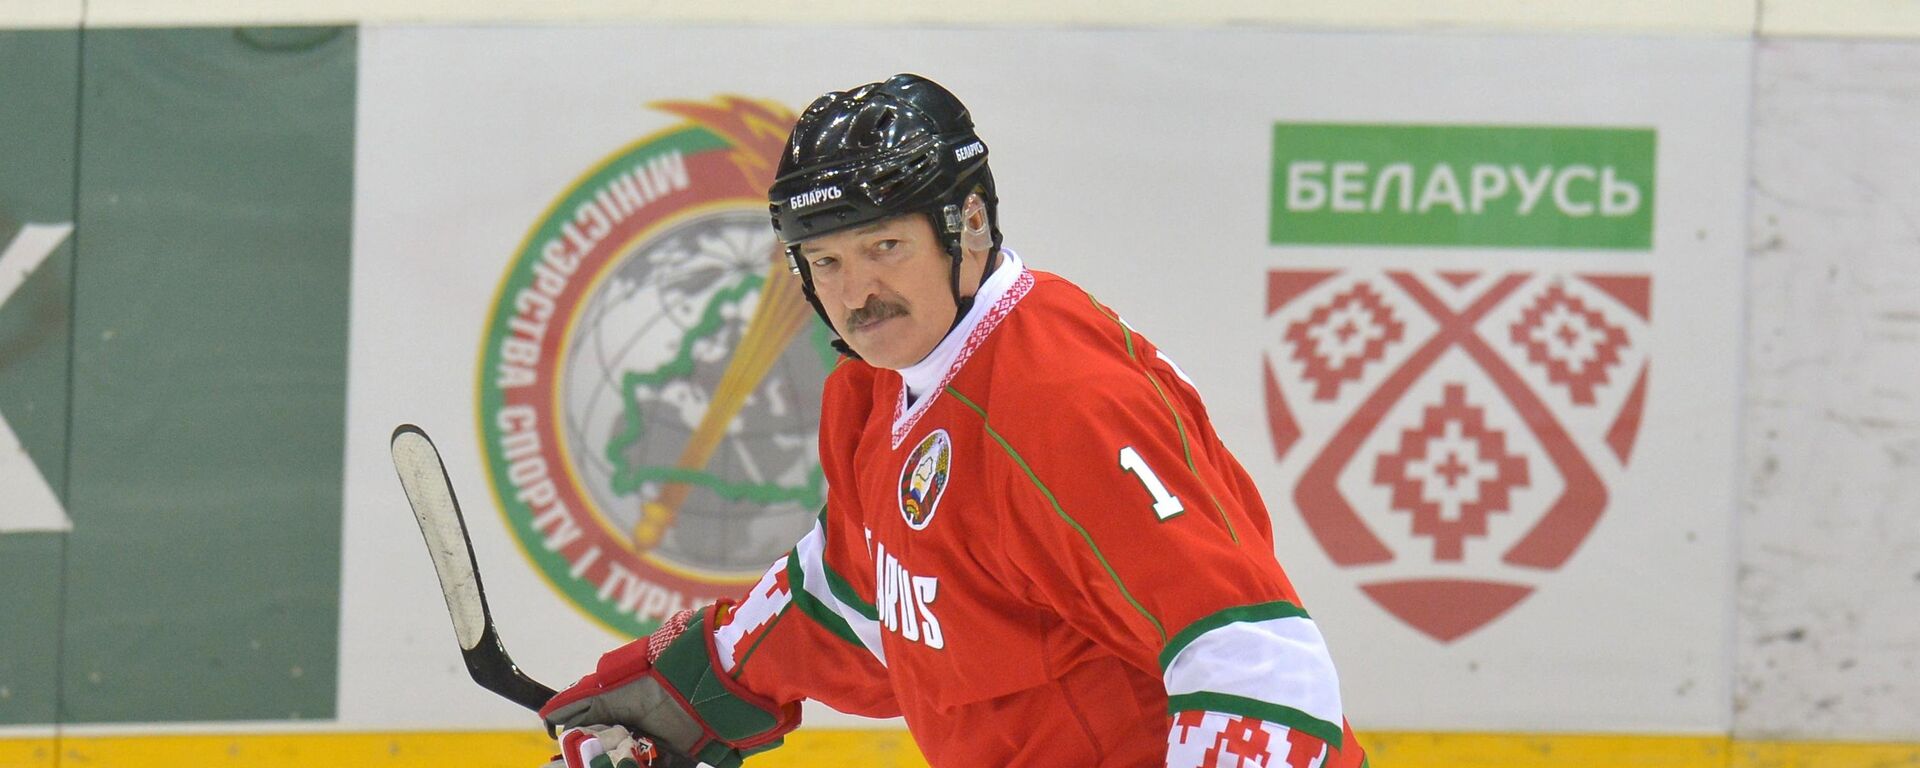 Президент Беларуси Александр Лукашенко играет в хоккей - Sputnik Беларусь, 1920, 11.02.2021